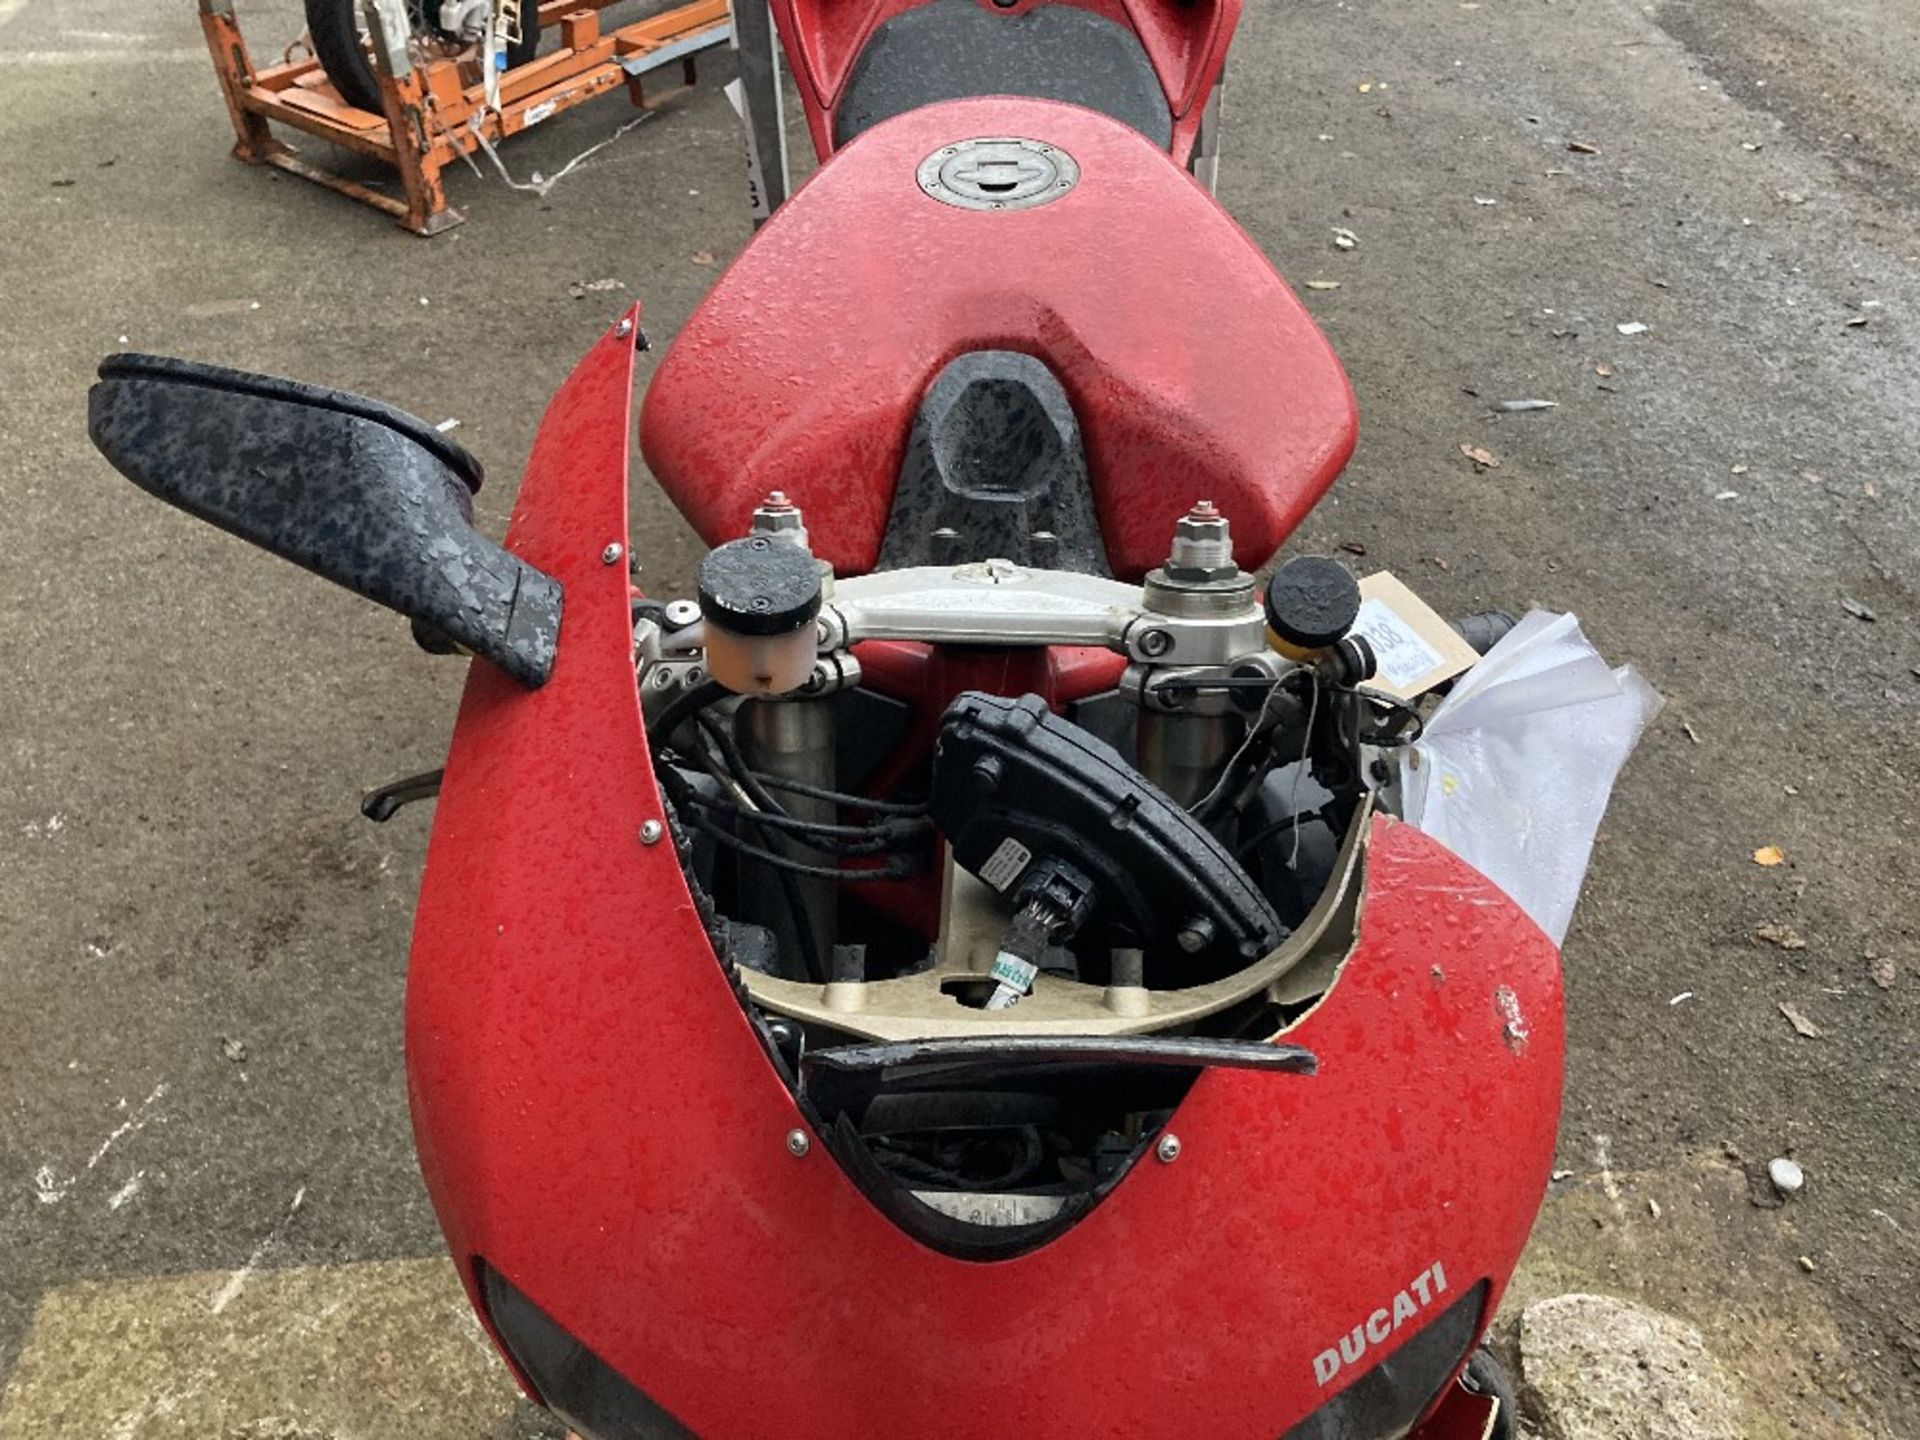 GX10 KTE Ducati 848 Motorcycle - Image 4 of 36